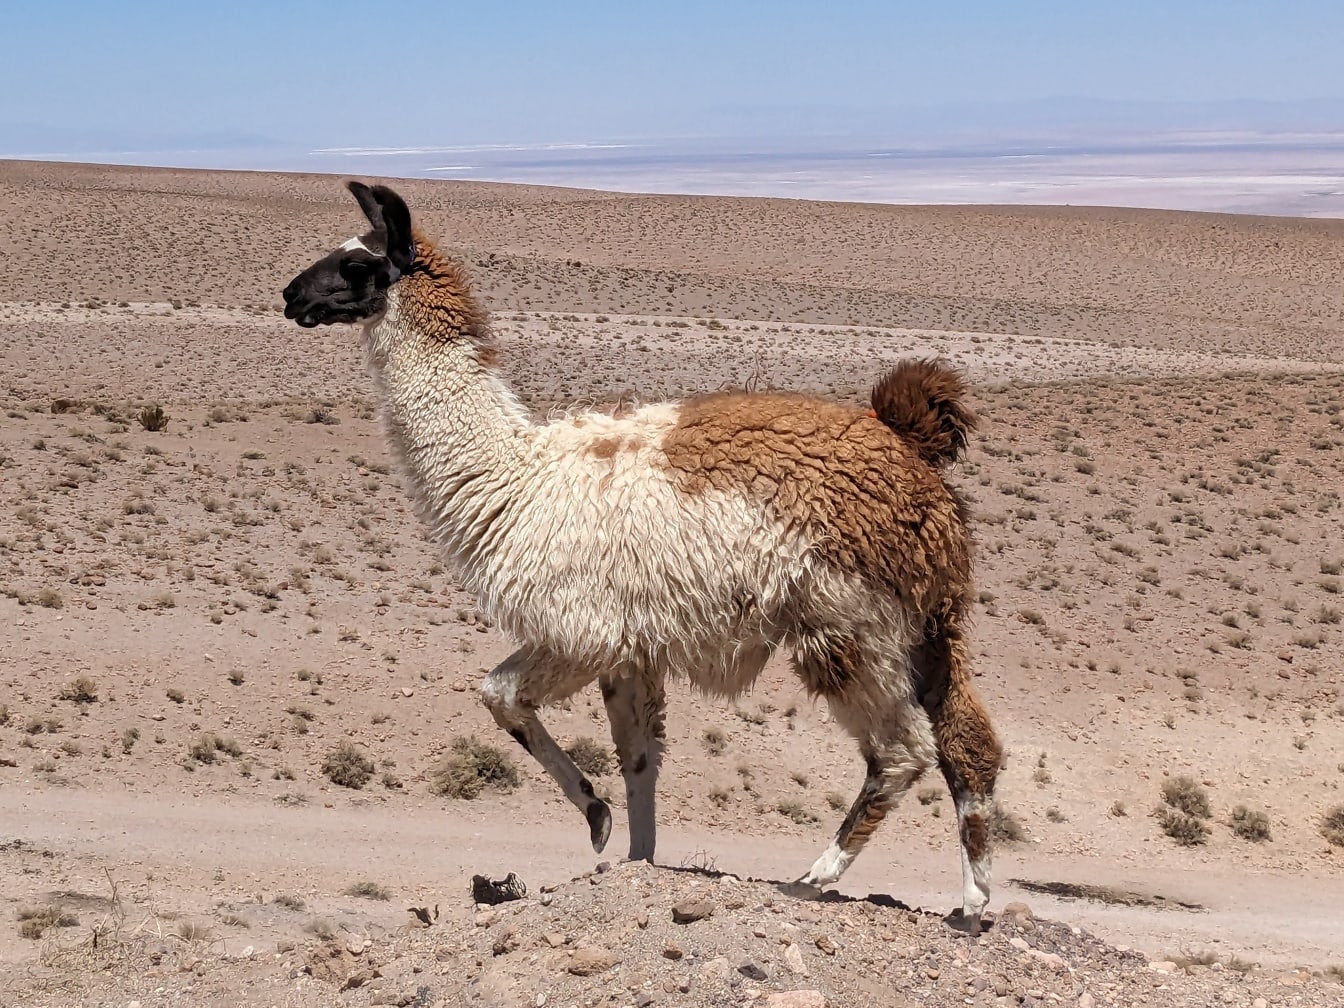 Peruanisches Lama wandert auf Hügel in der Wüste in großer Höhe (Lama glama)